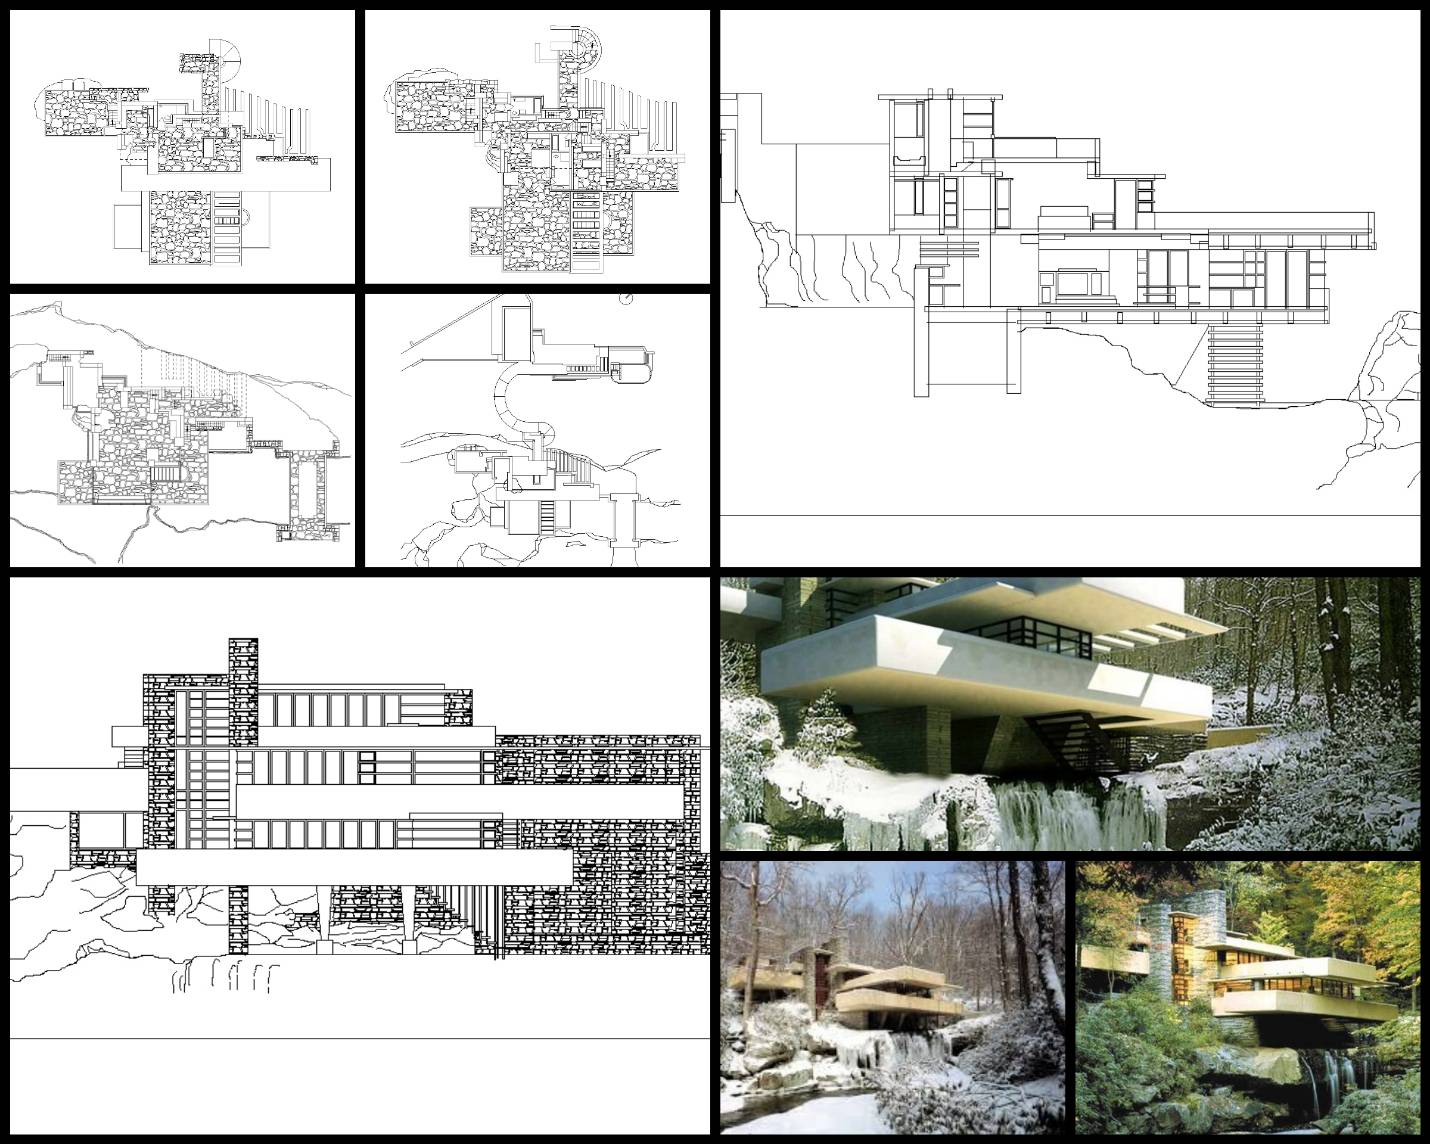 【世界知名建築案例研究CAD設計施工圖】流水別墅-Frank Lloyd Wright法蘭克·洛伊·萊特